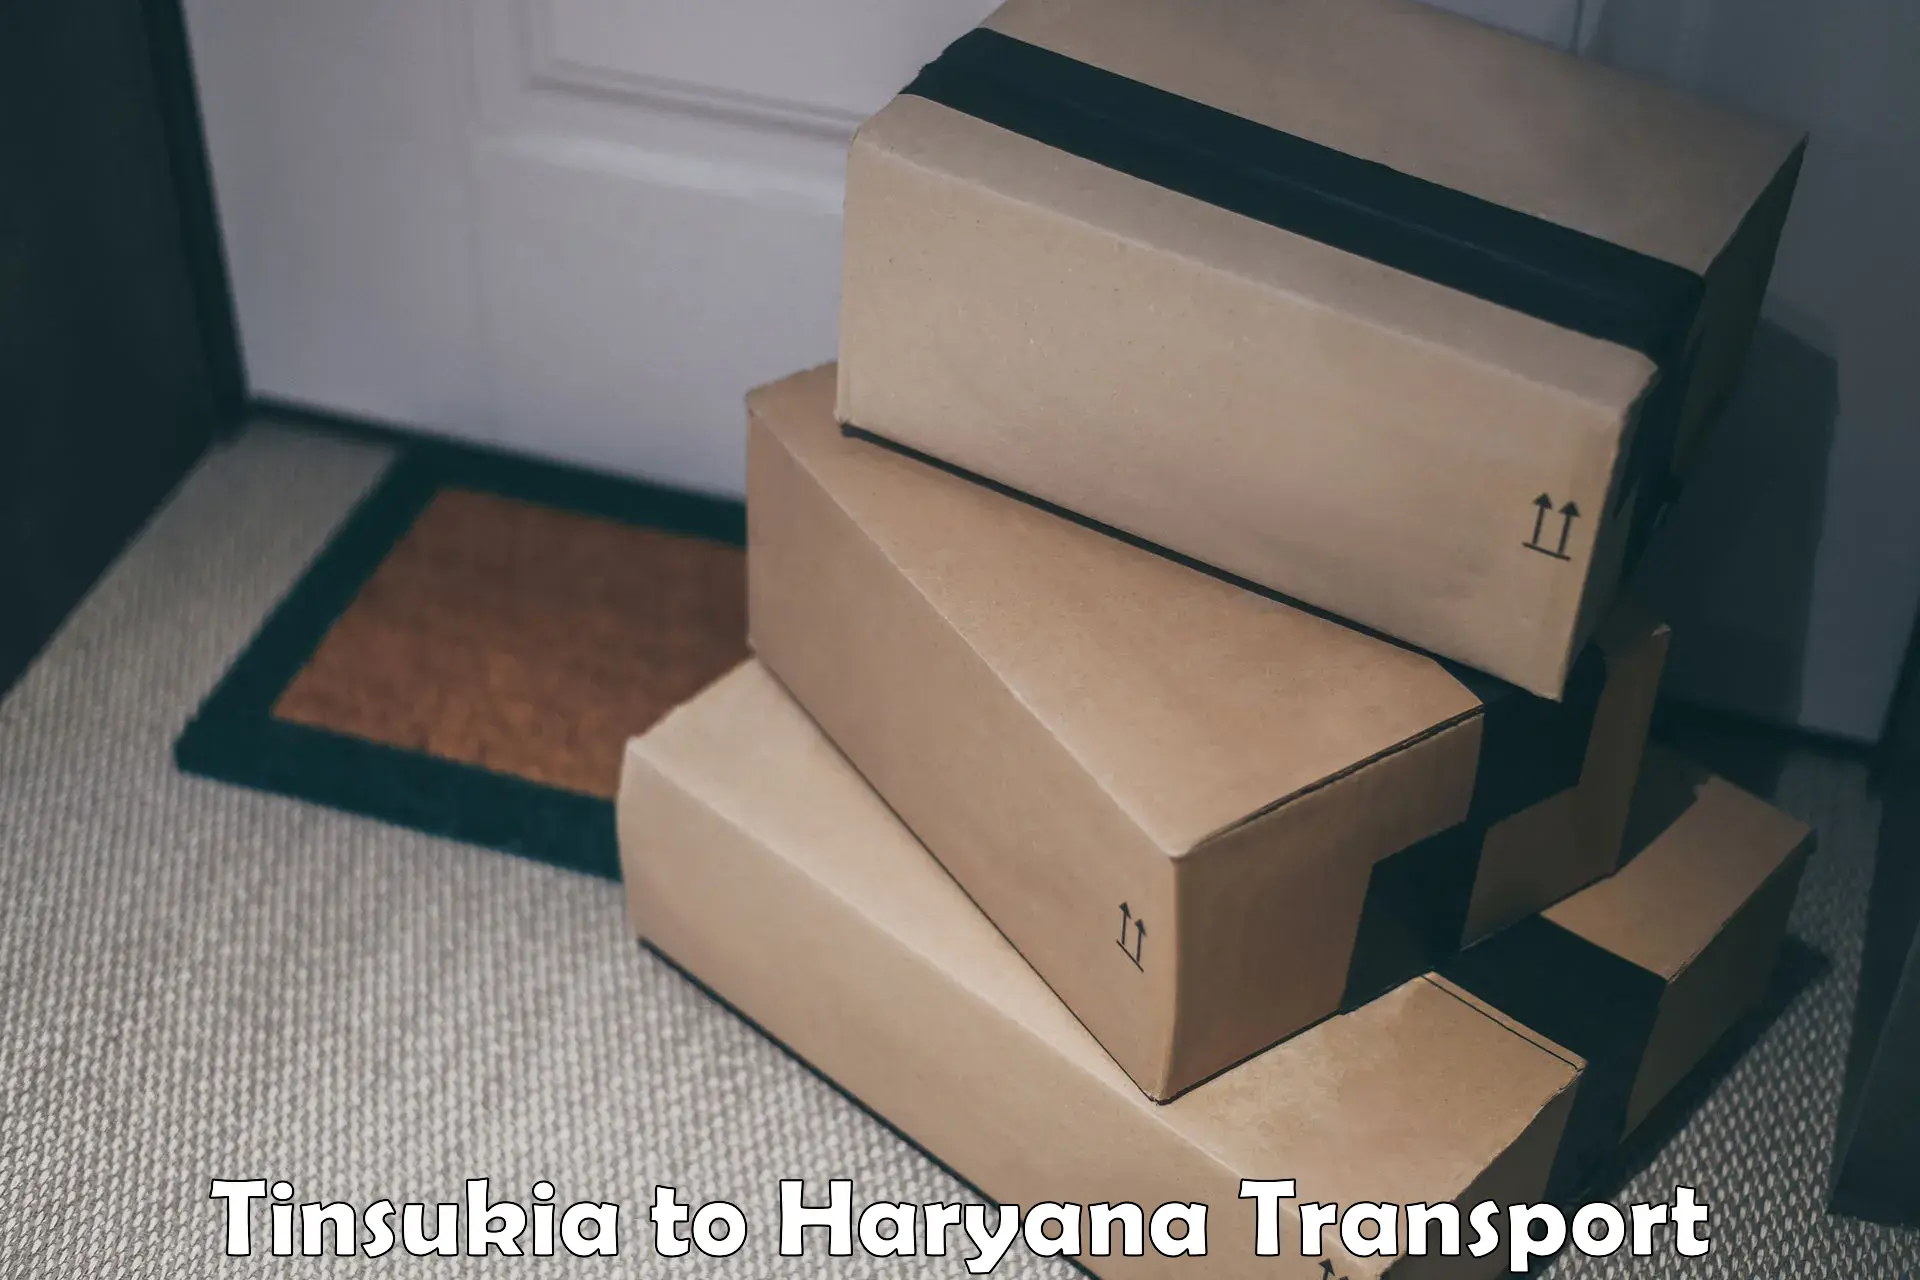 Furniture transport service Tinsukia to Barwala